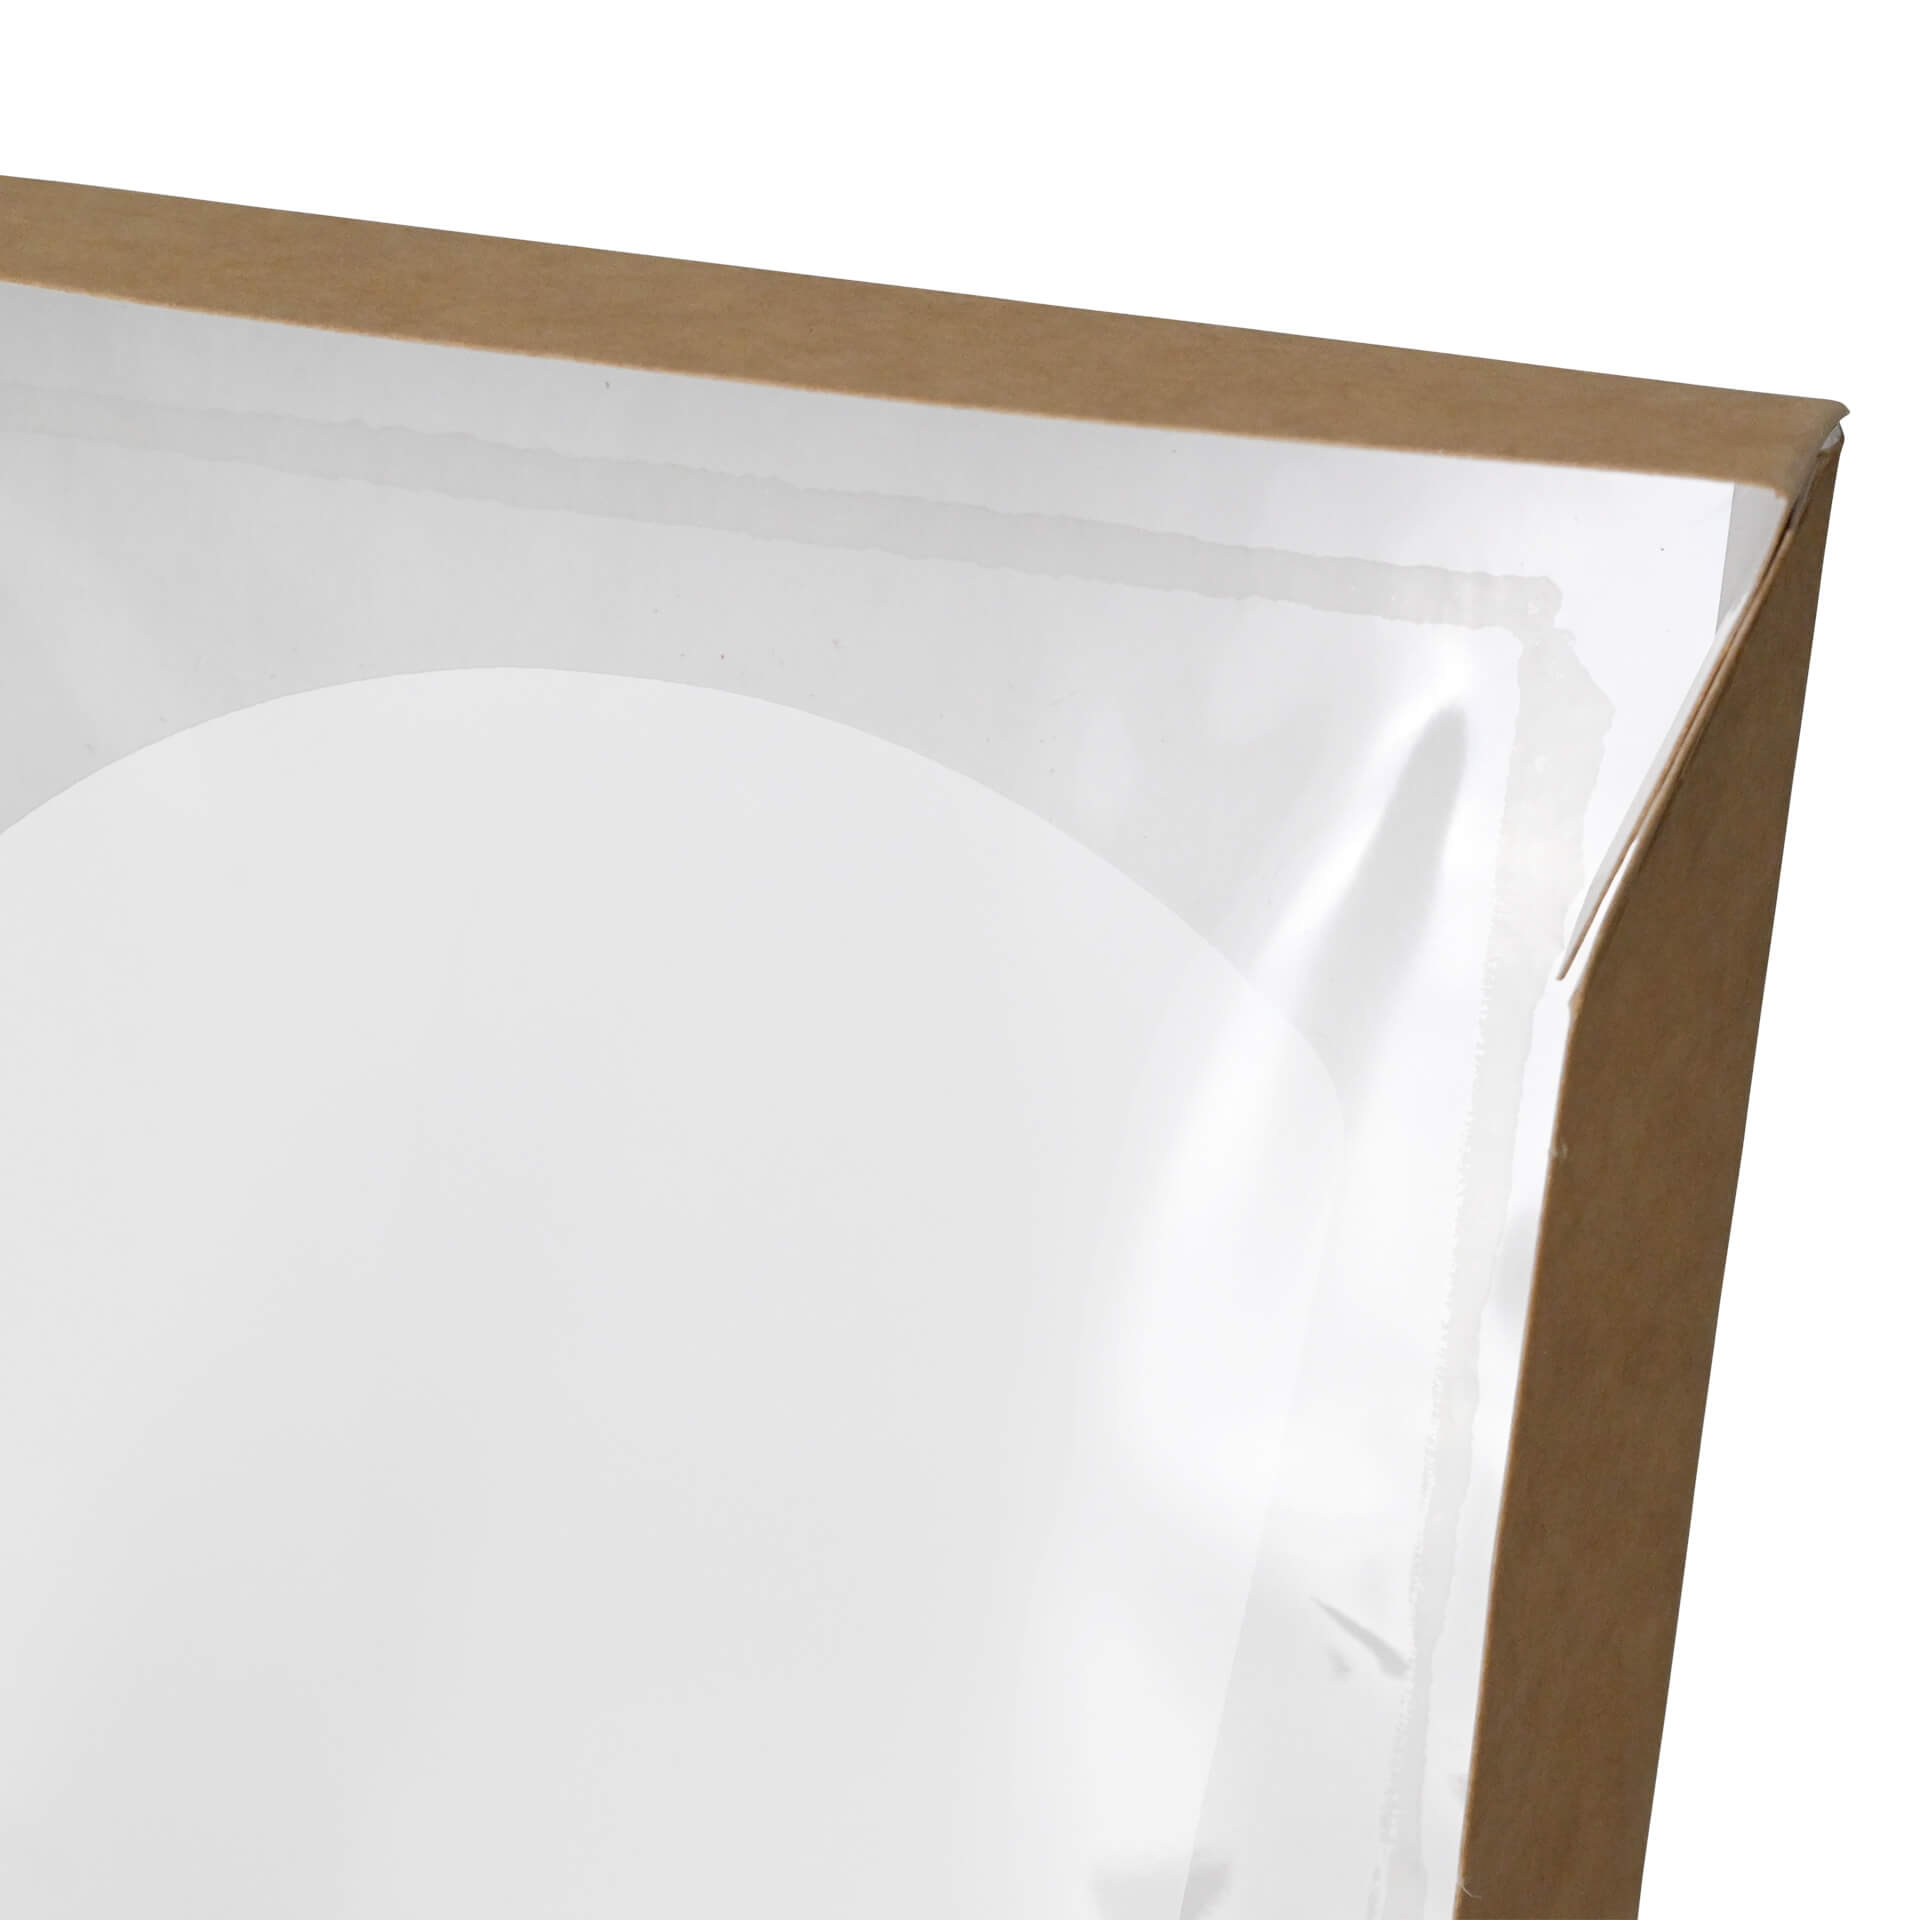 Karton-Sichtfenster-Schachteln 12 x 12 x 4 cm, 600 ml, Zellulose-Fenster, außen braun, innen weiß, faltbar